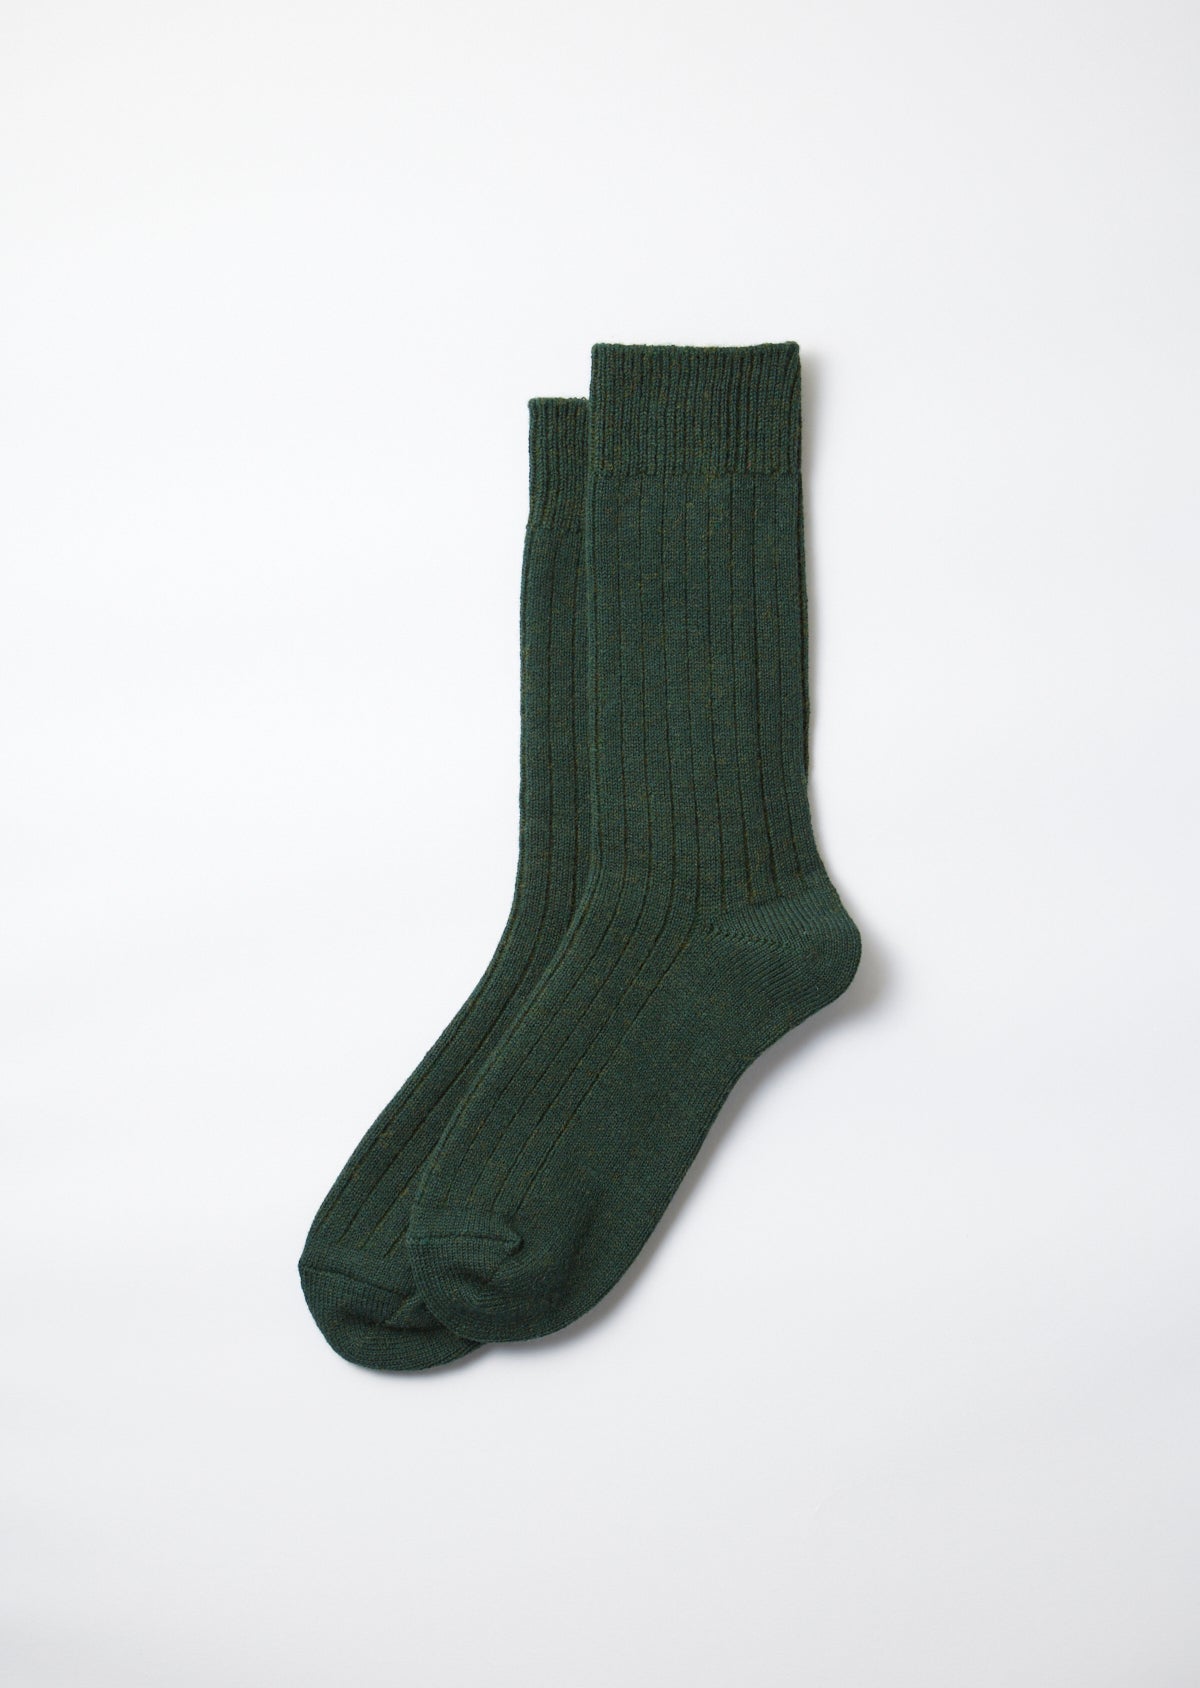 Baumwolle / Wolle Socken - grün